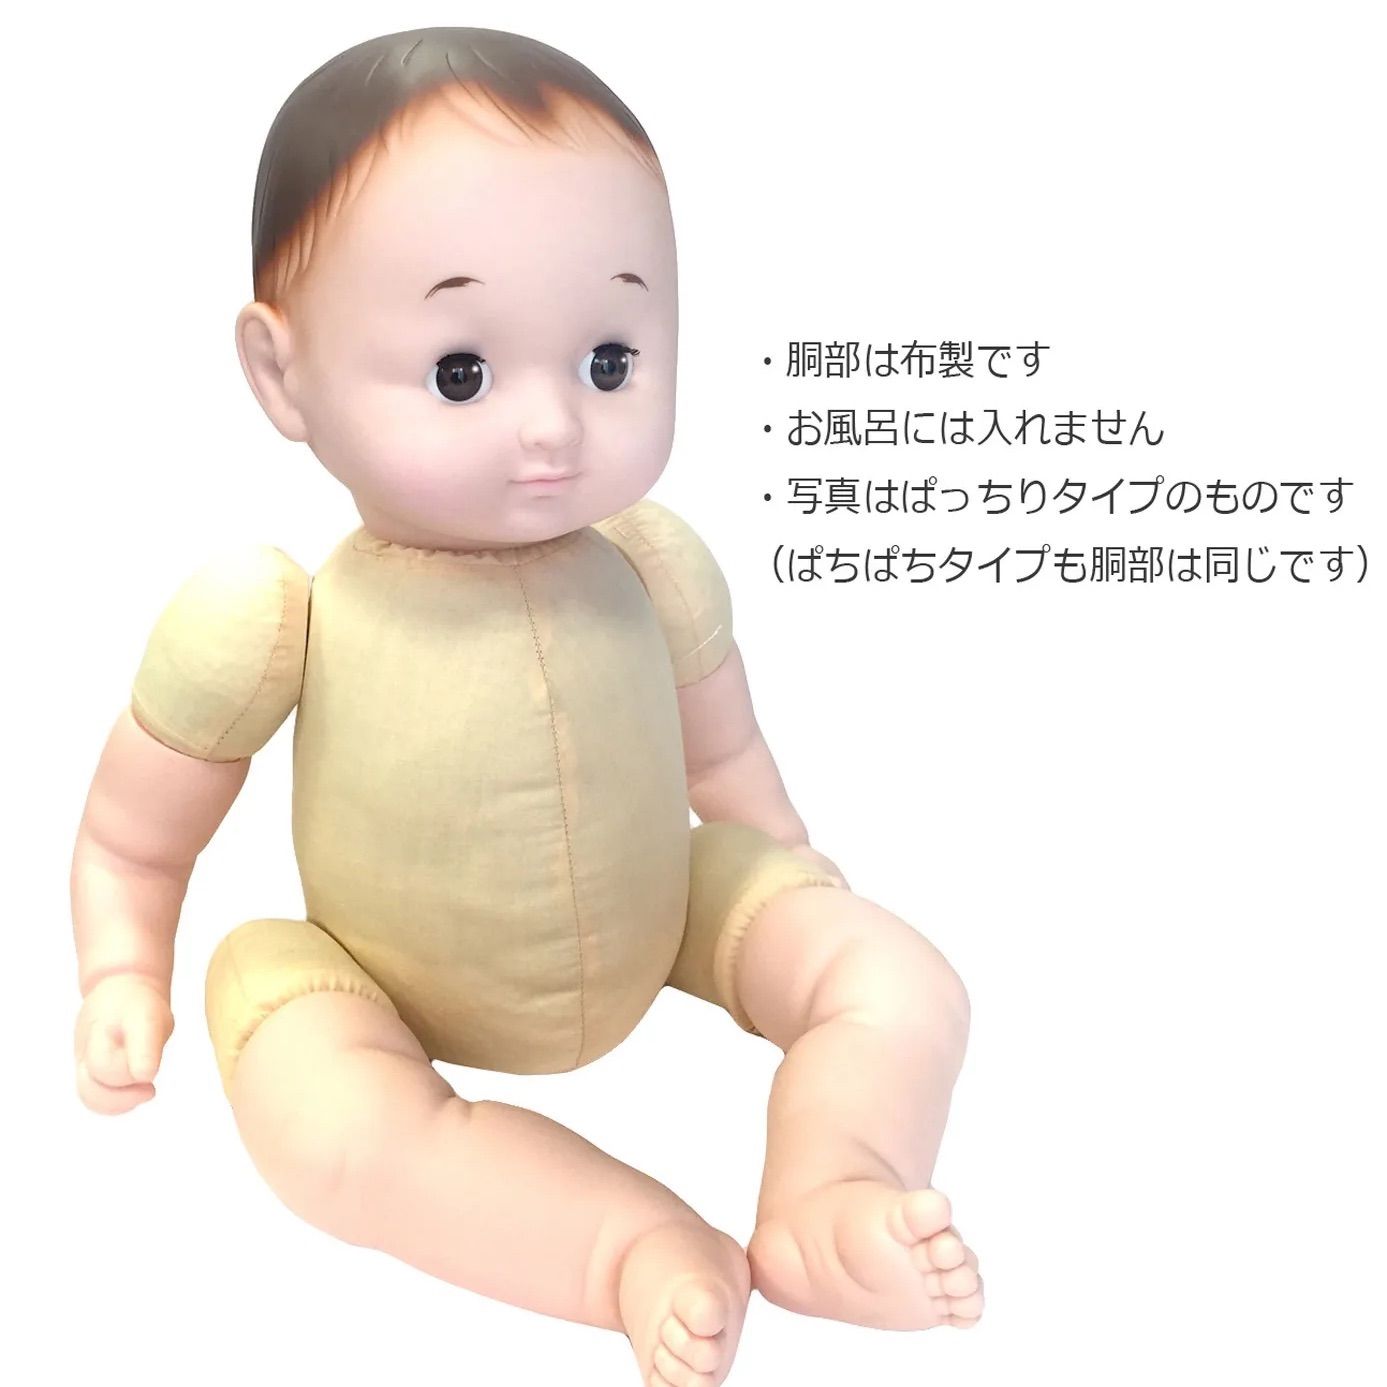 赤ちゃん人形「のんちゃん」 - はっぴーわん - メルカリ